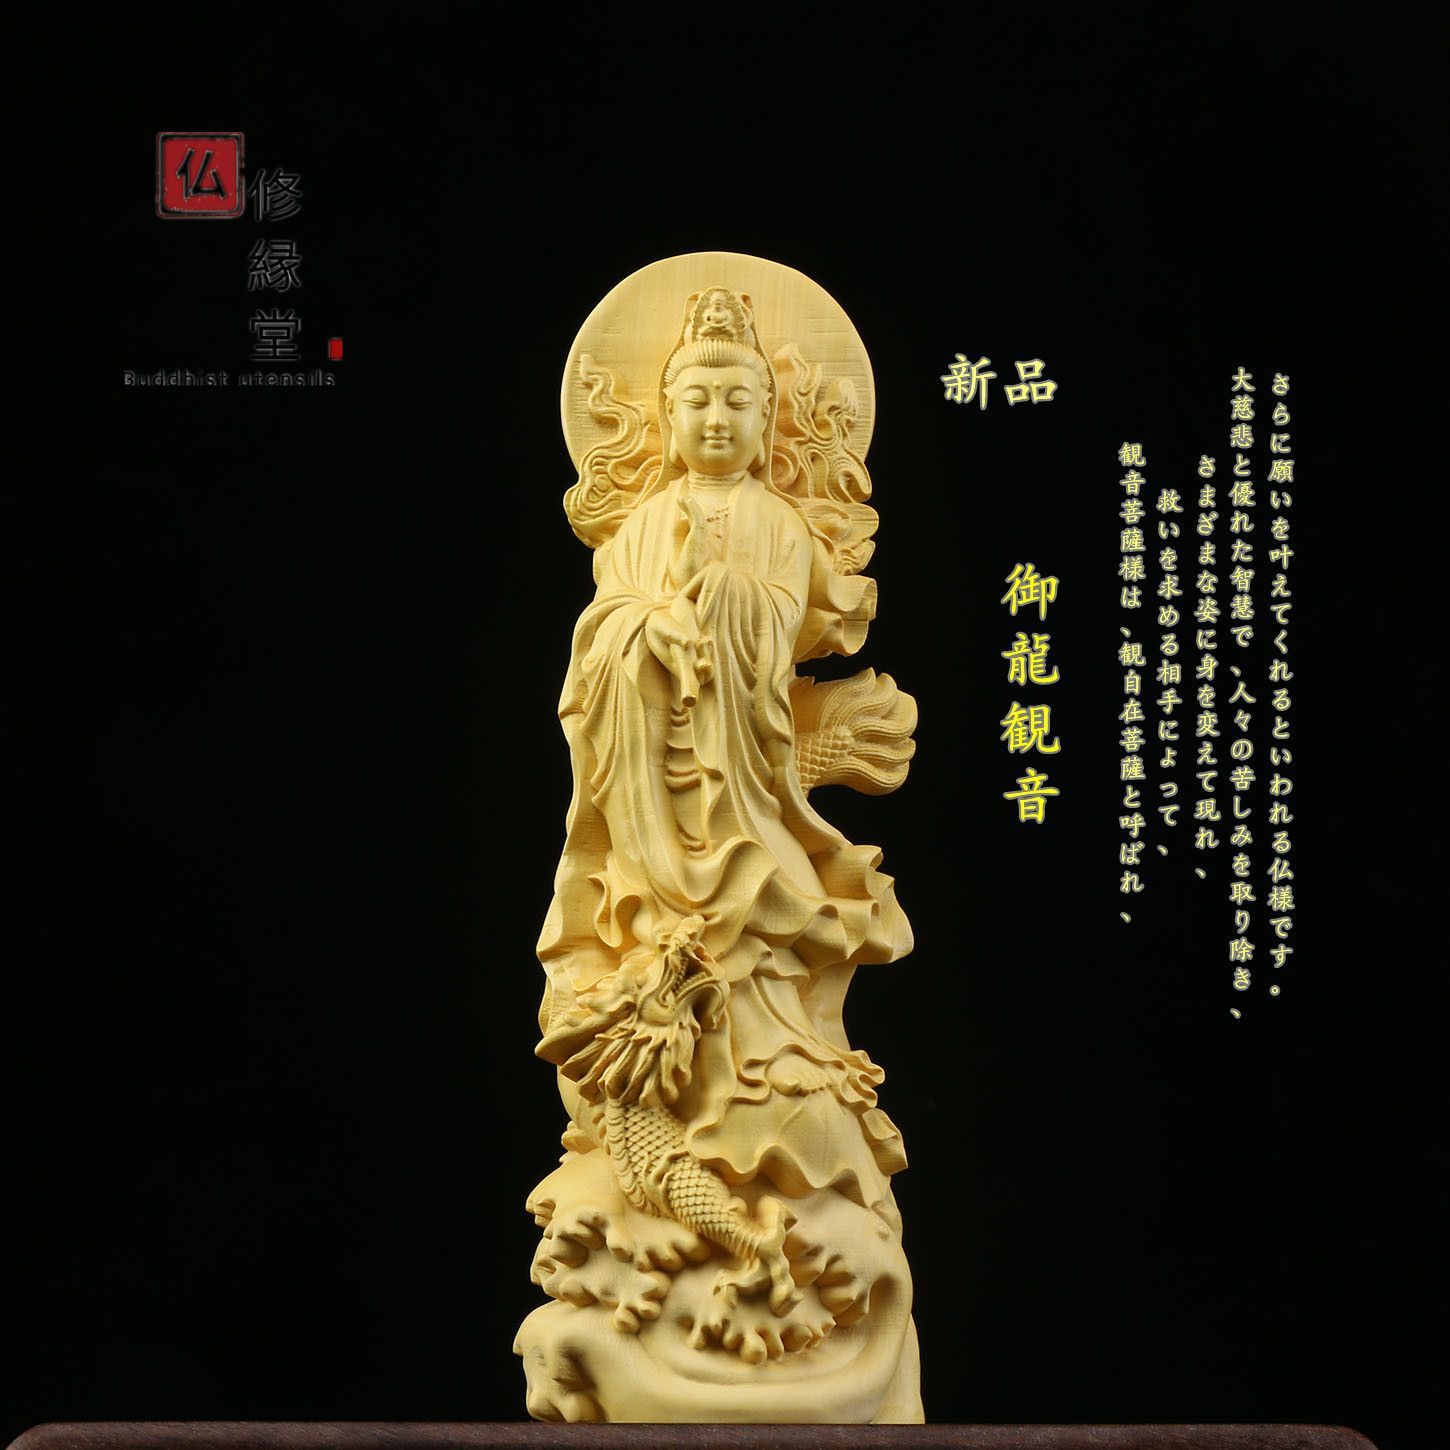 極上彫 木彫仏像 観音菩薩立像 彫刻 仏教工芸品 柘植材 仏師で仕上げ